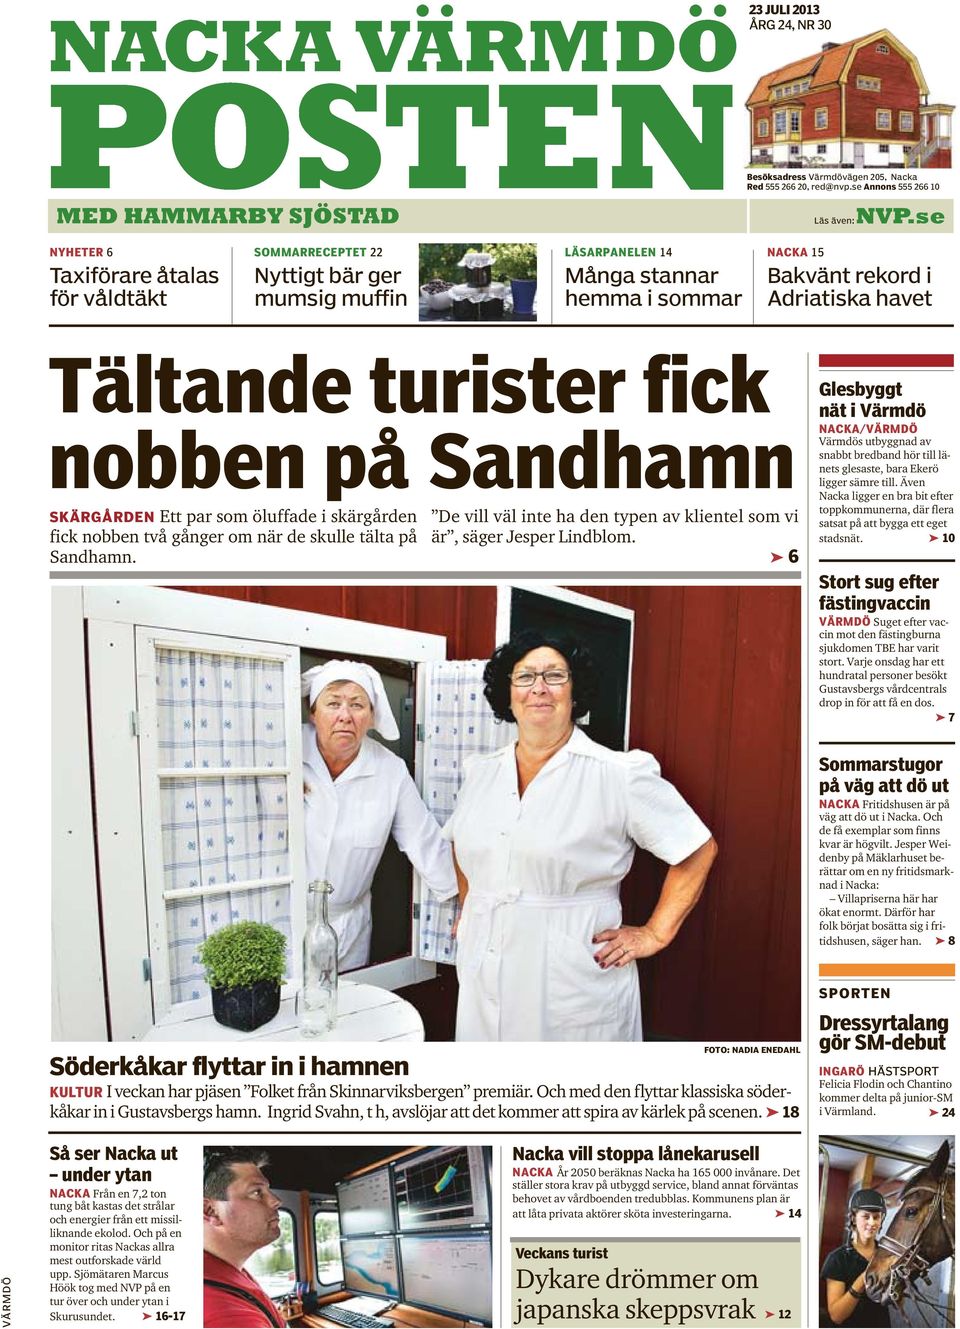 fick nobben på Sandhamn SKÄRGÅRDEN Ett par som öluffade i skärgården fick nobben två gånger om när de skulle tälta på Sandhamn.